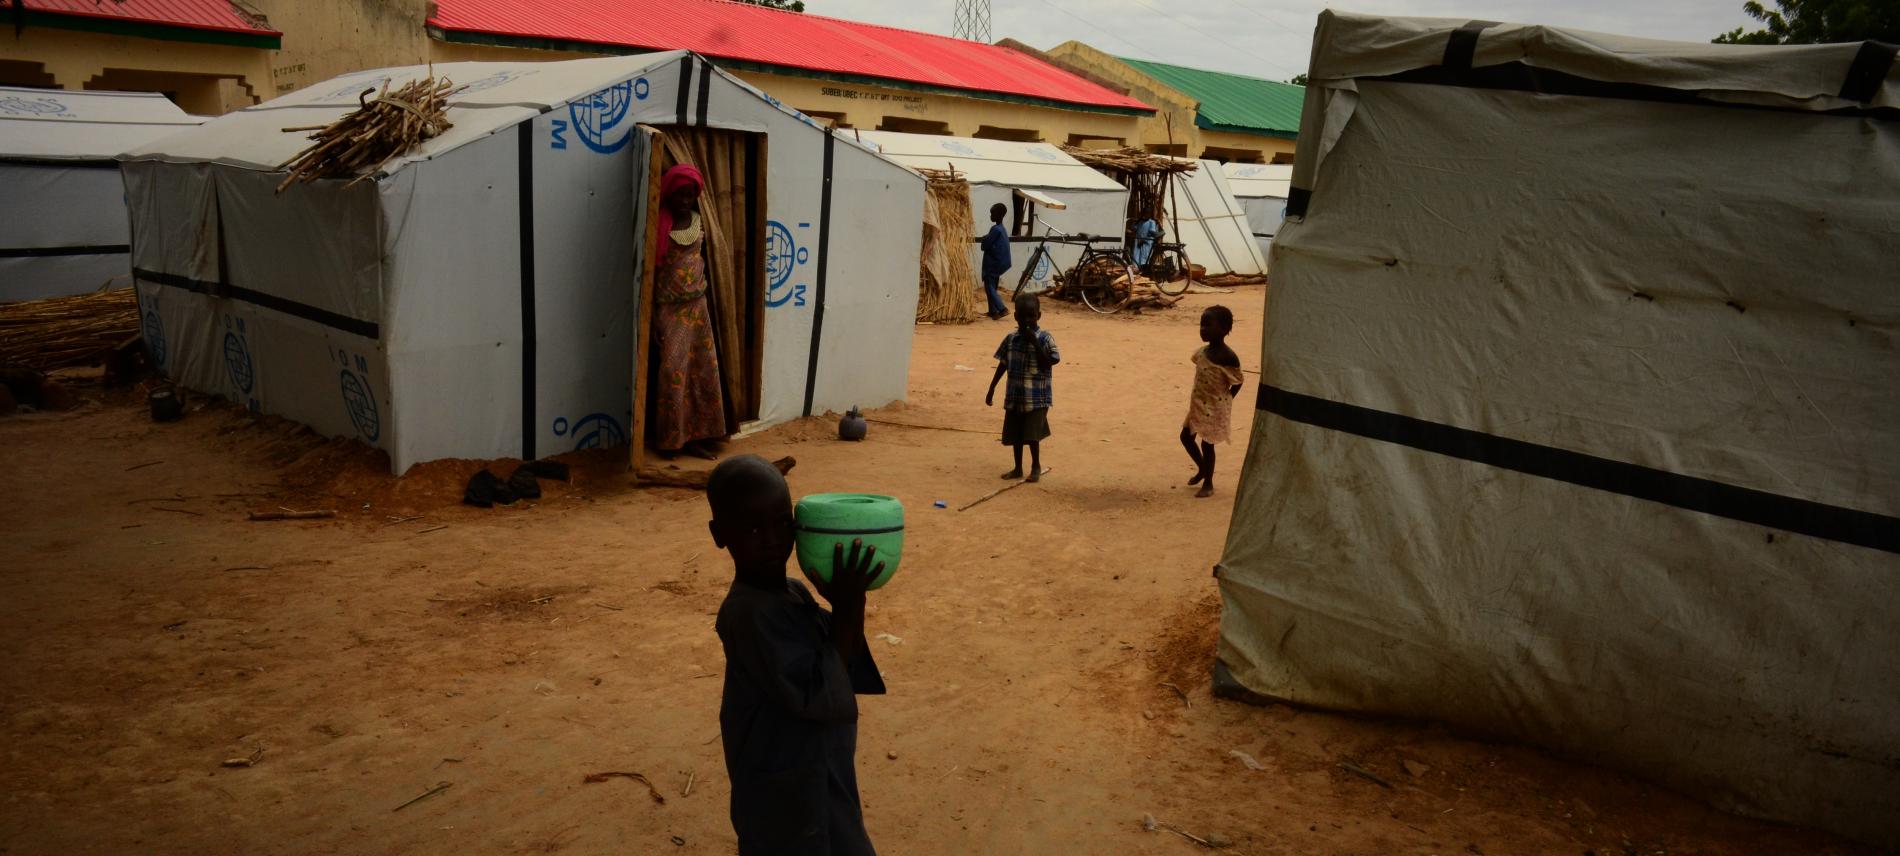 Menschen im Flüchtlingscamp von Damboa in Nigeria. Foto: Benedicte Kurzen